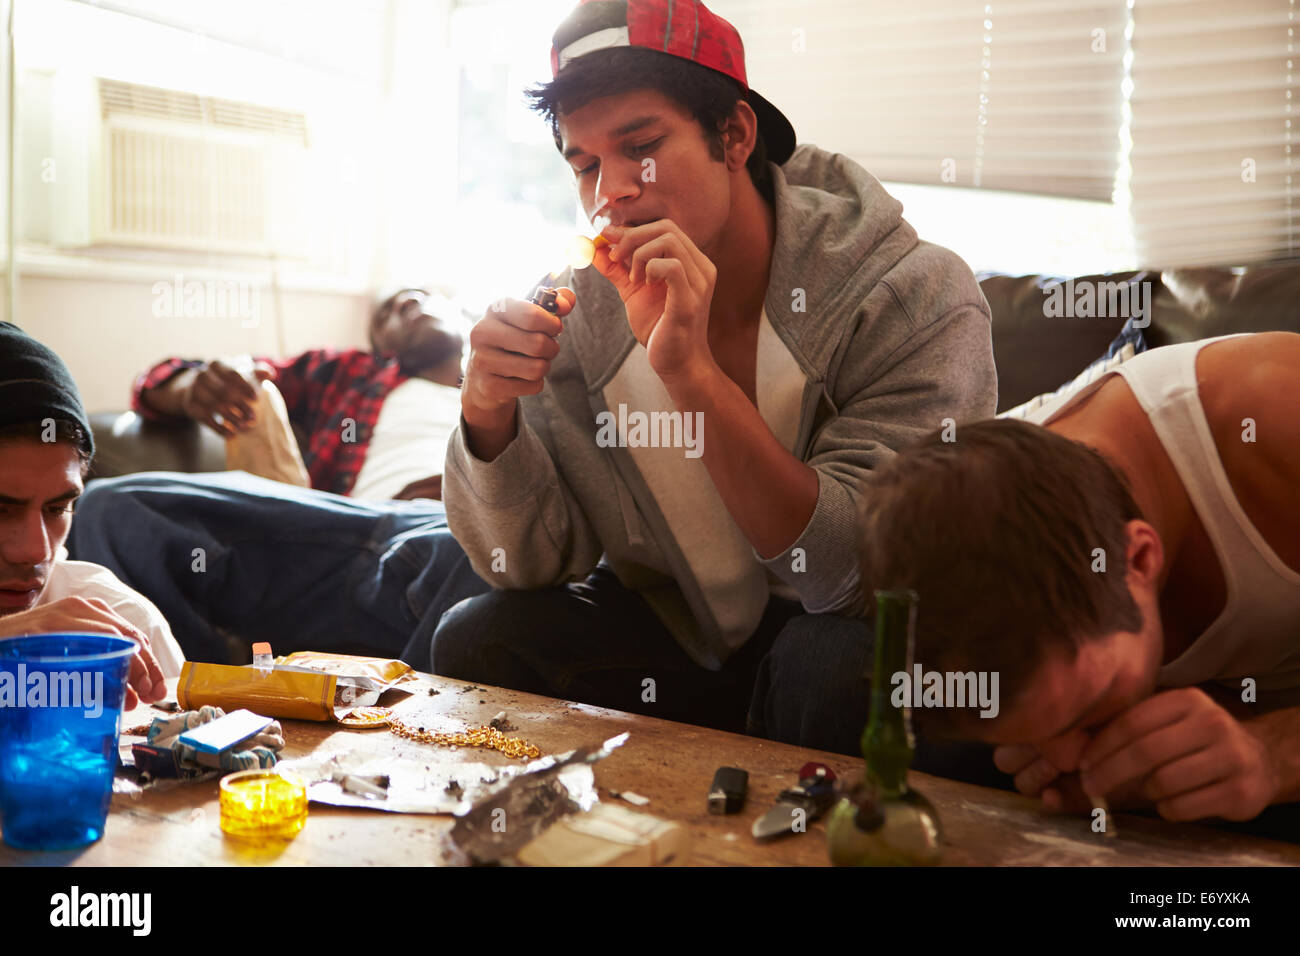 Bande von jungen Männern, die Einnahme von Drogen im Haus Stockfoto